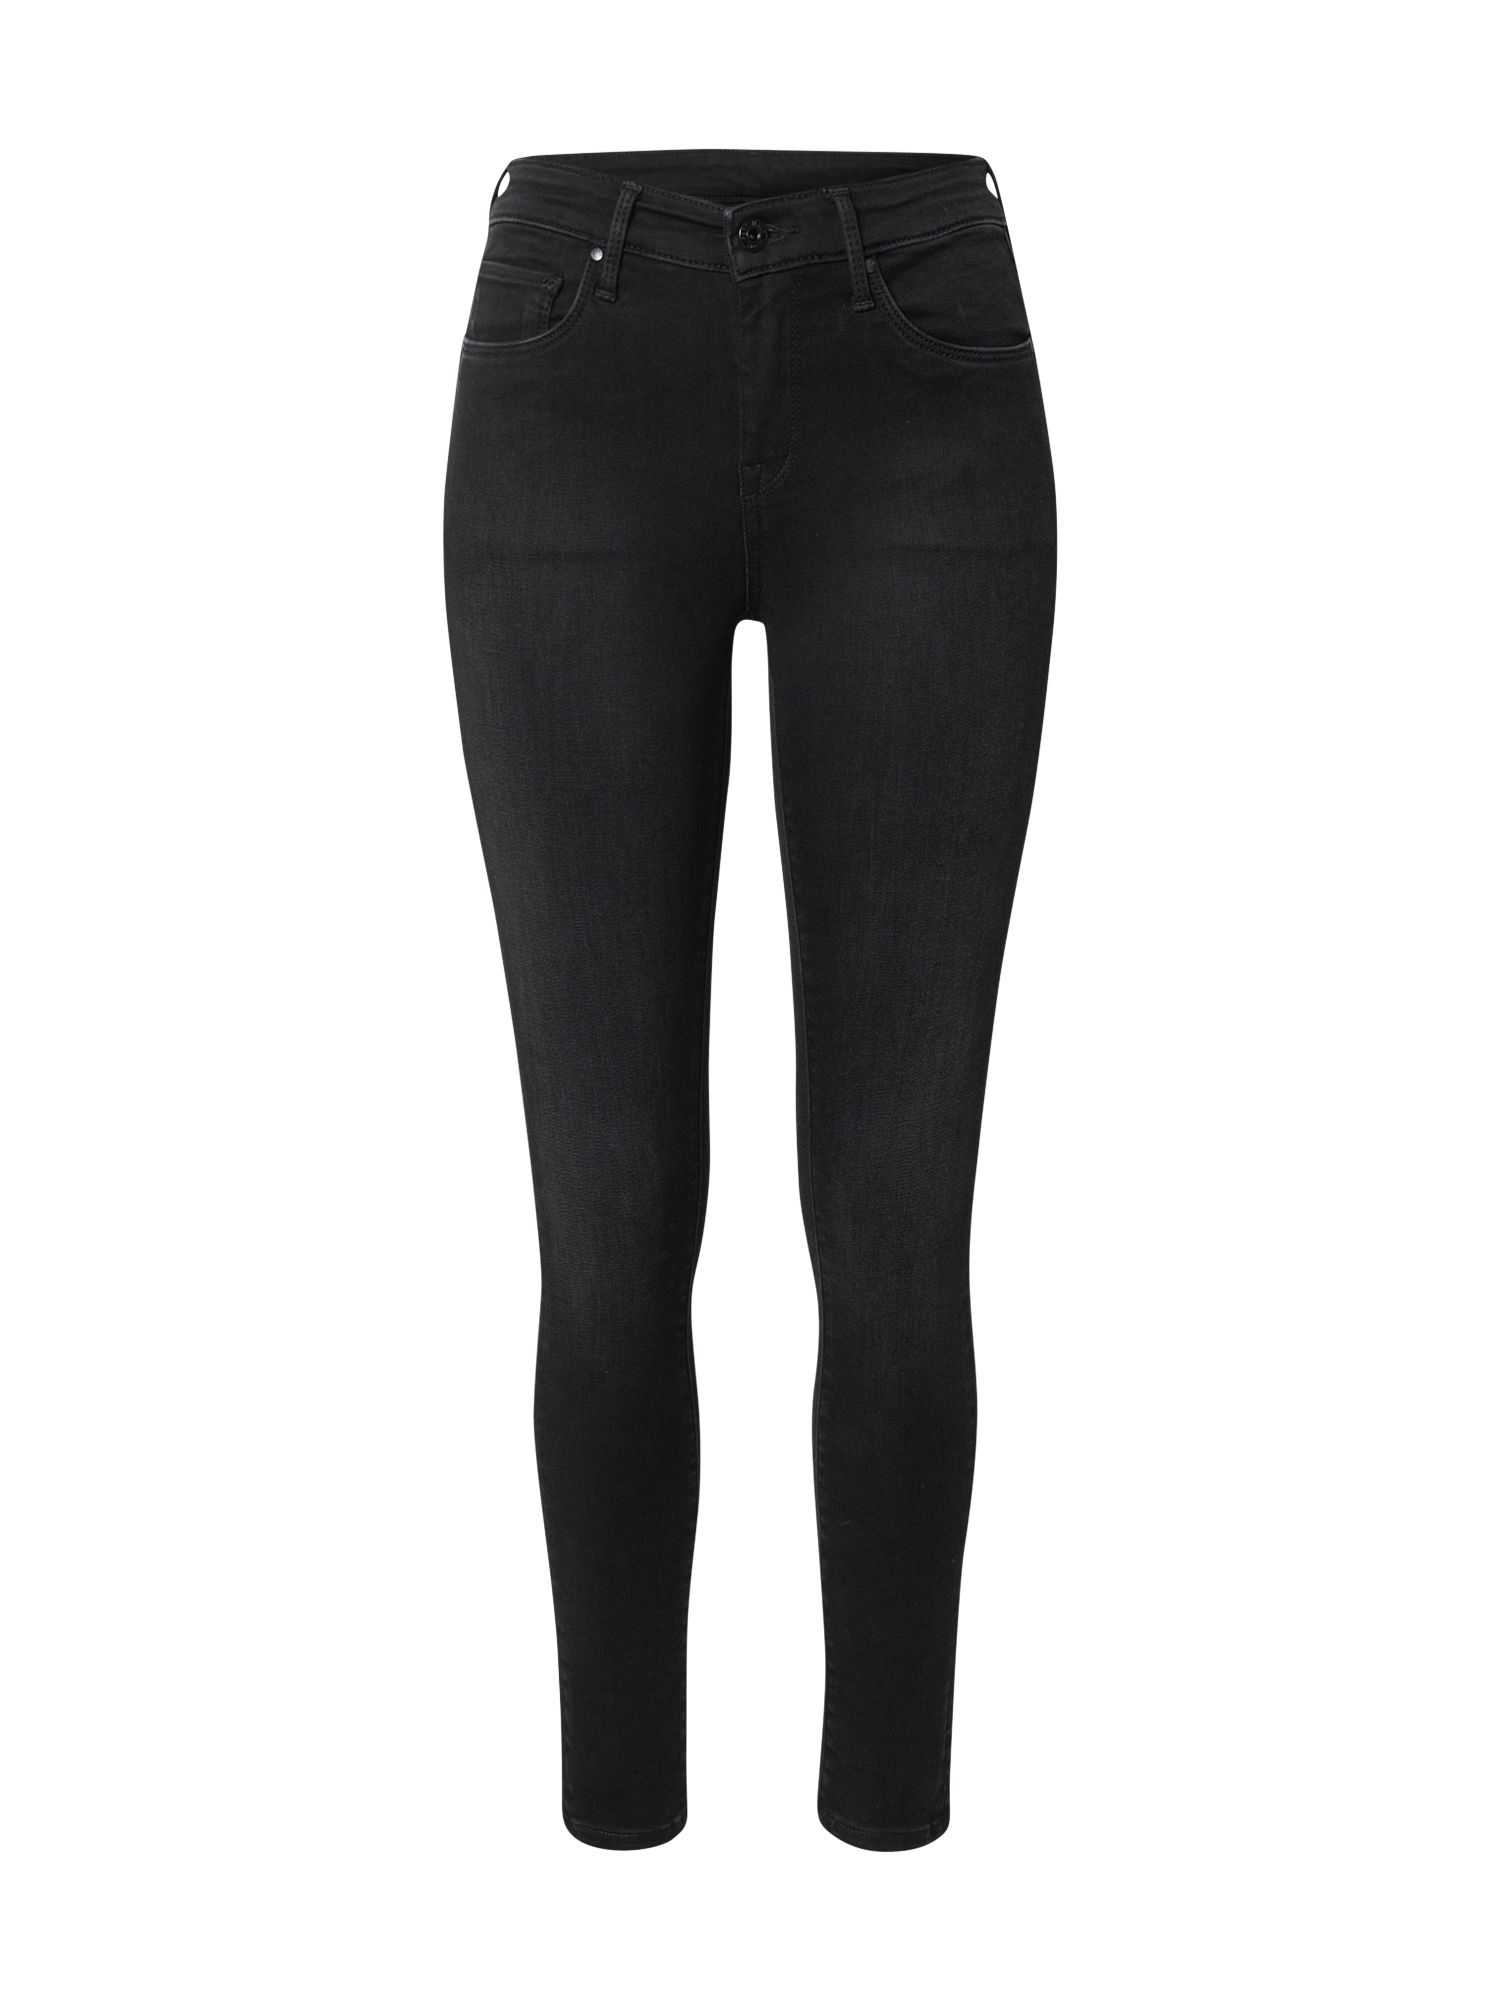 Kobiety nyXyb Pepe Jeans Jeansy ZOE w kolorze Czarnym 